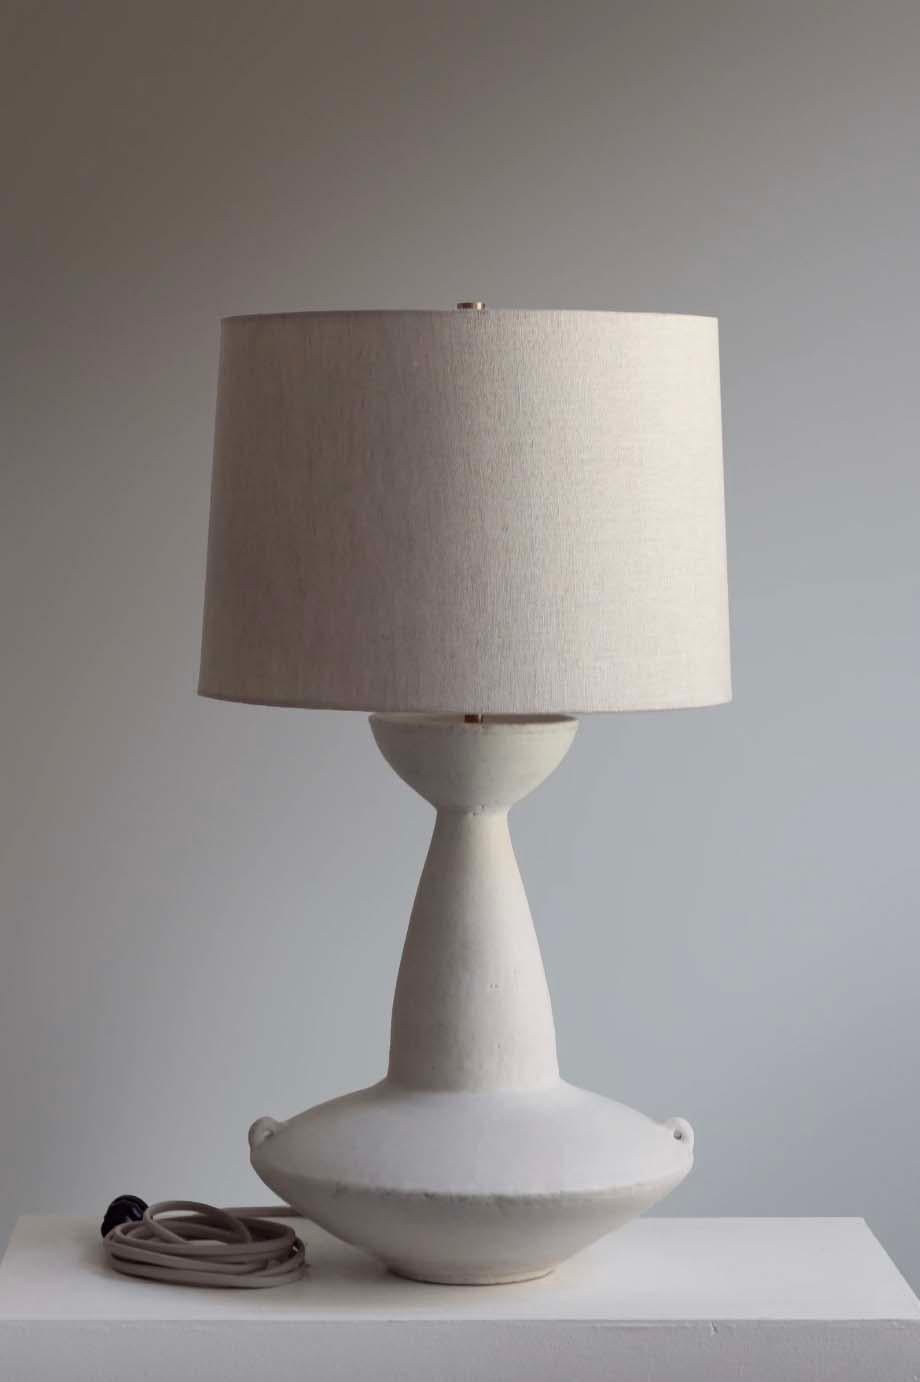 Die Claudius-Lampe ist eine handgefertigte Studiotöpferei des Keramikkünstlers Danny Kaplan. Inklusive Lampenschirm. Bitte beachten Sie, dass die genauen Abmessungen variieren können.

Geboren in New York City und aufgewachsen in Aix-en-Provence,